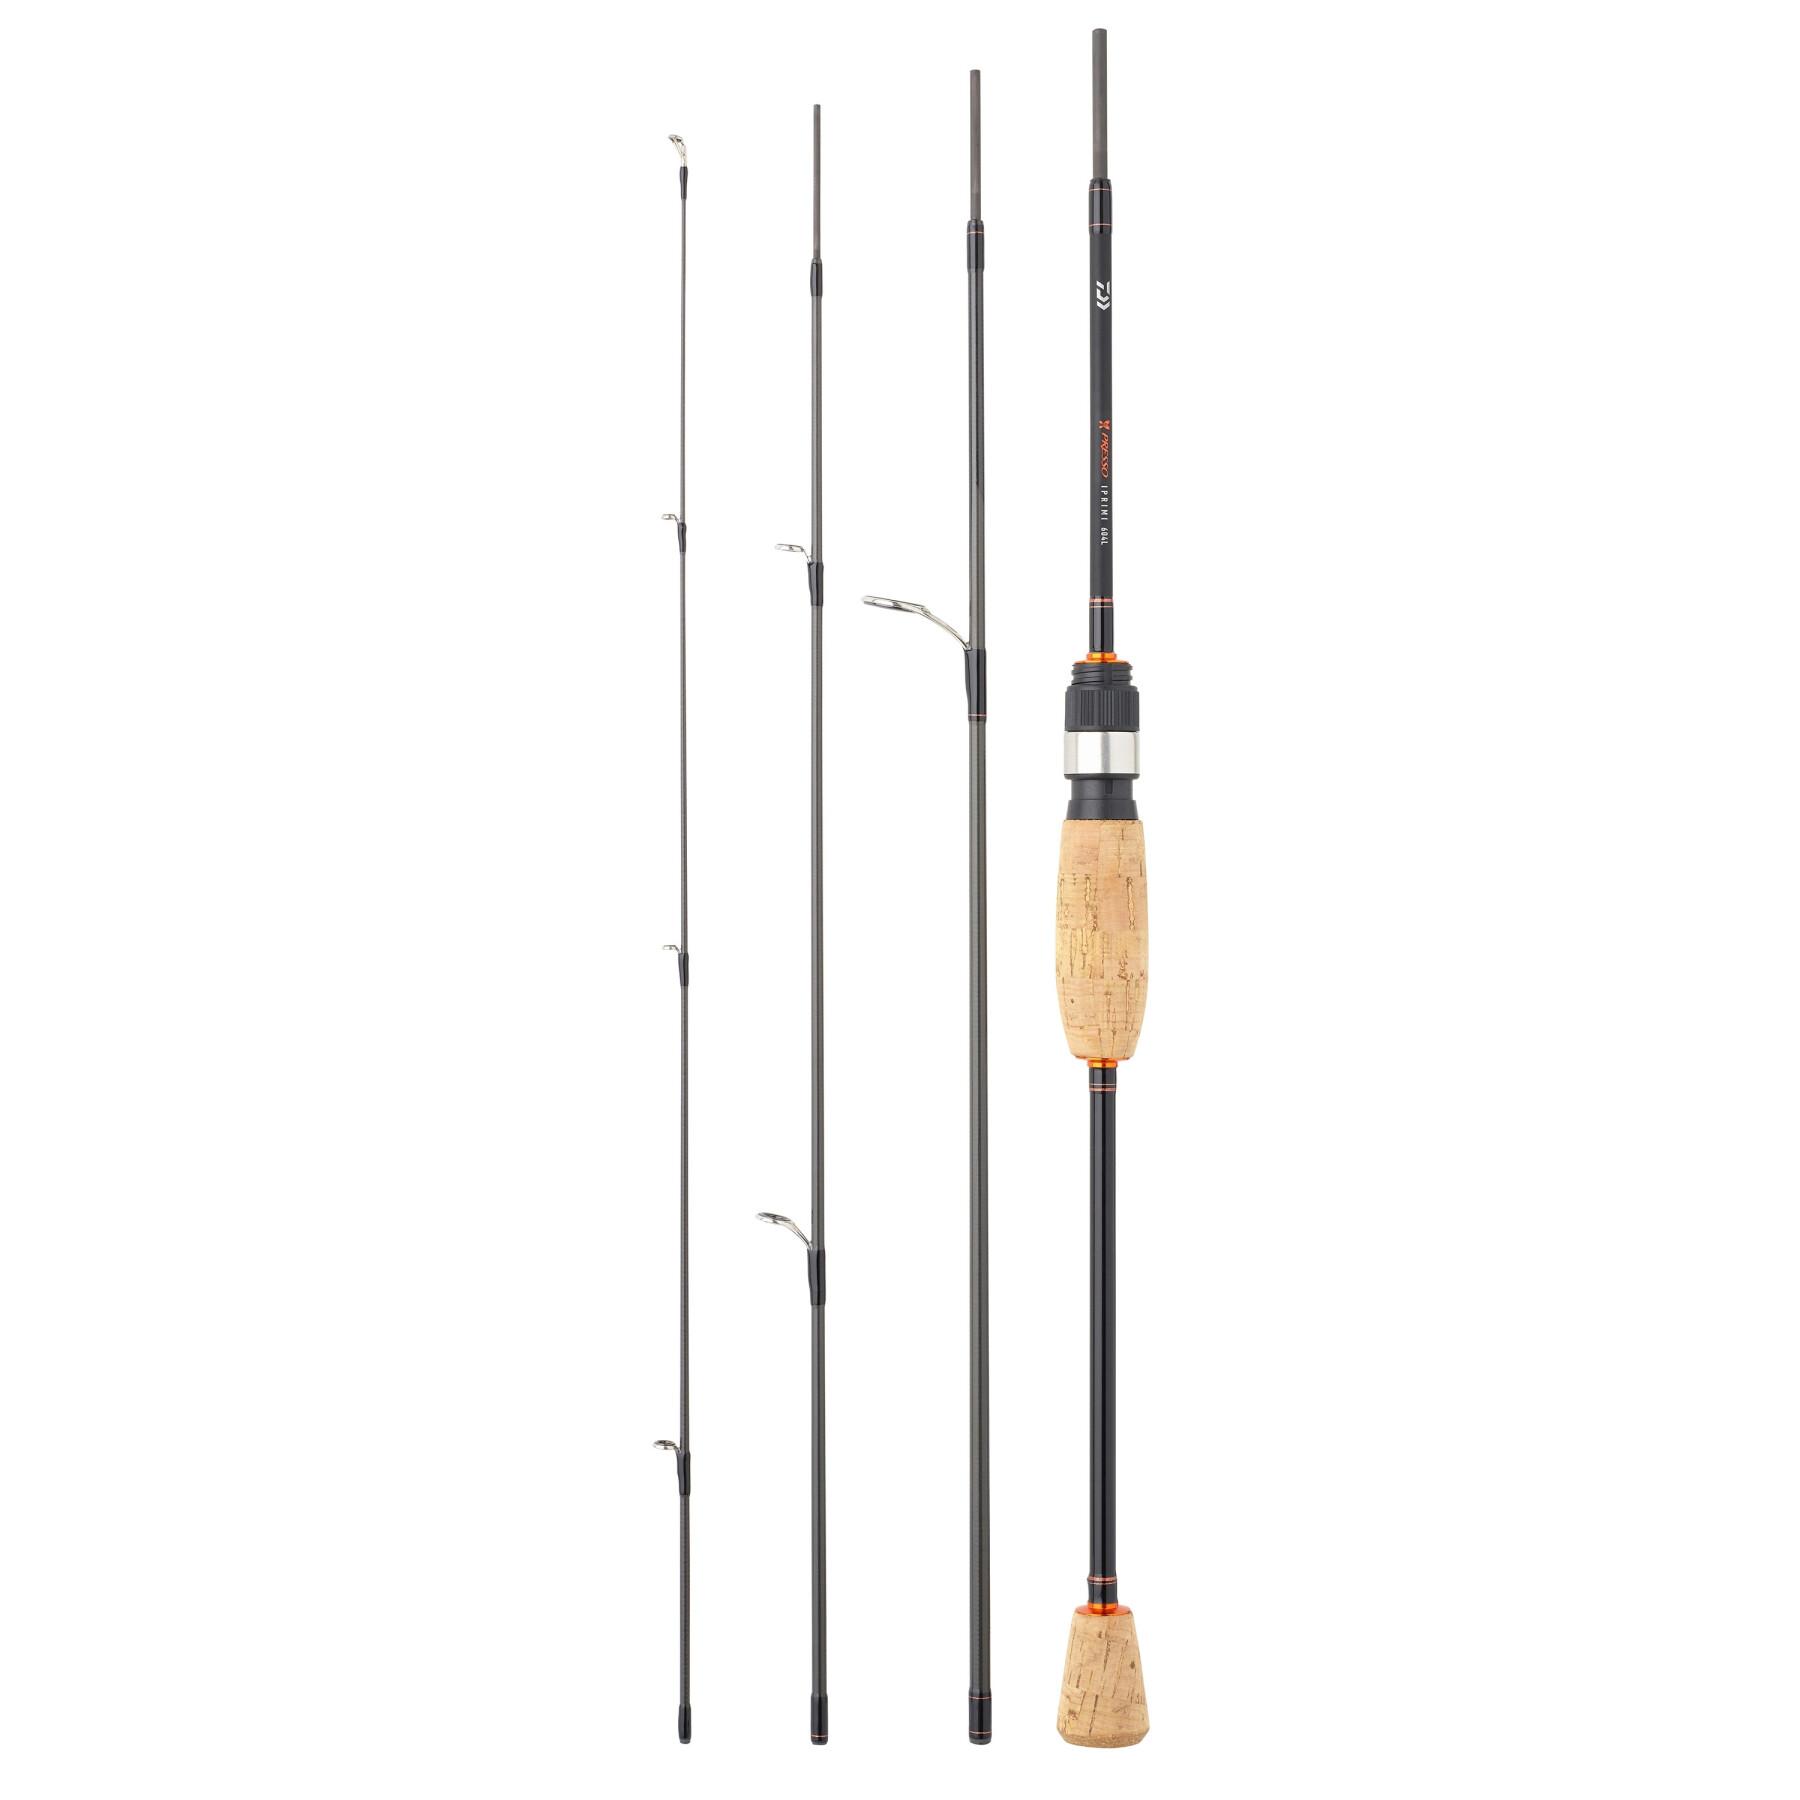 Trout rod Daiwa Presso 662 MLX 5-14g - Best Brands - Fishing